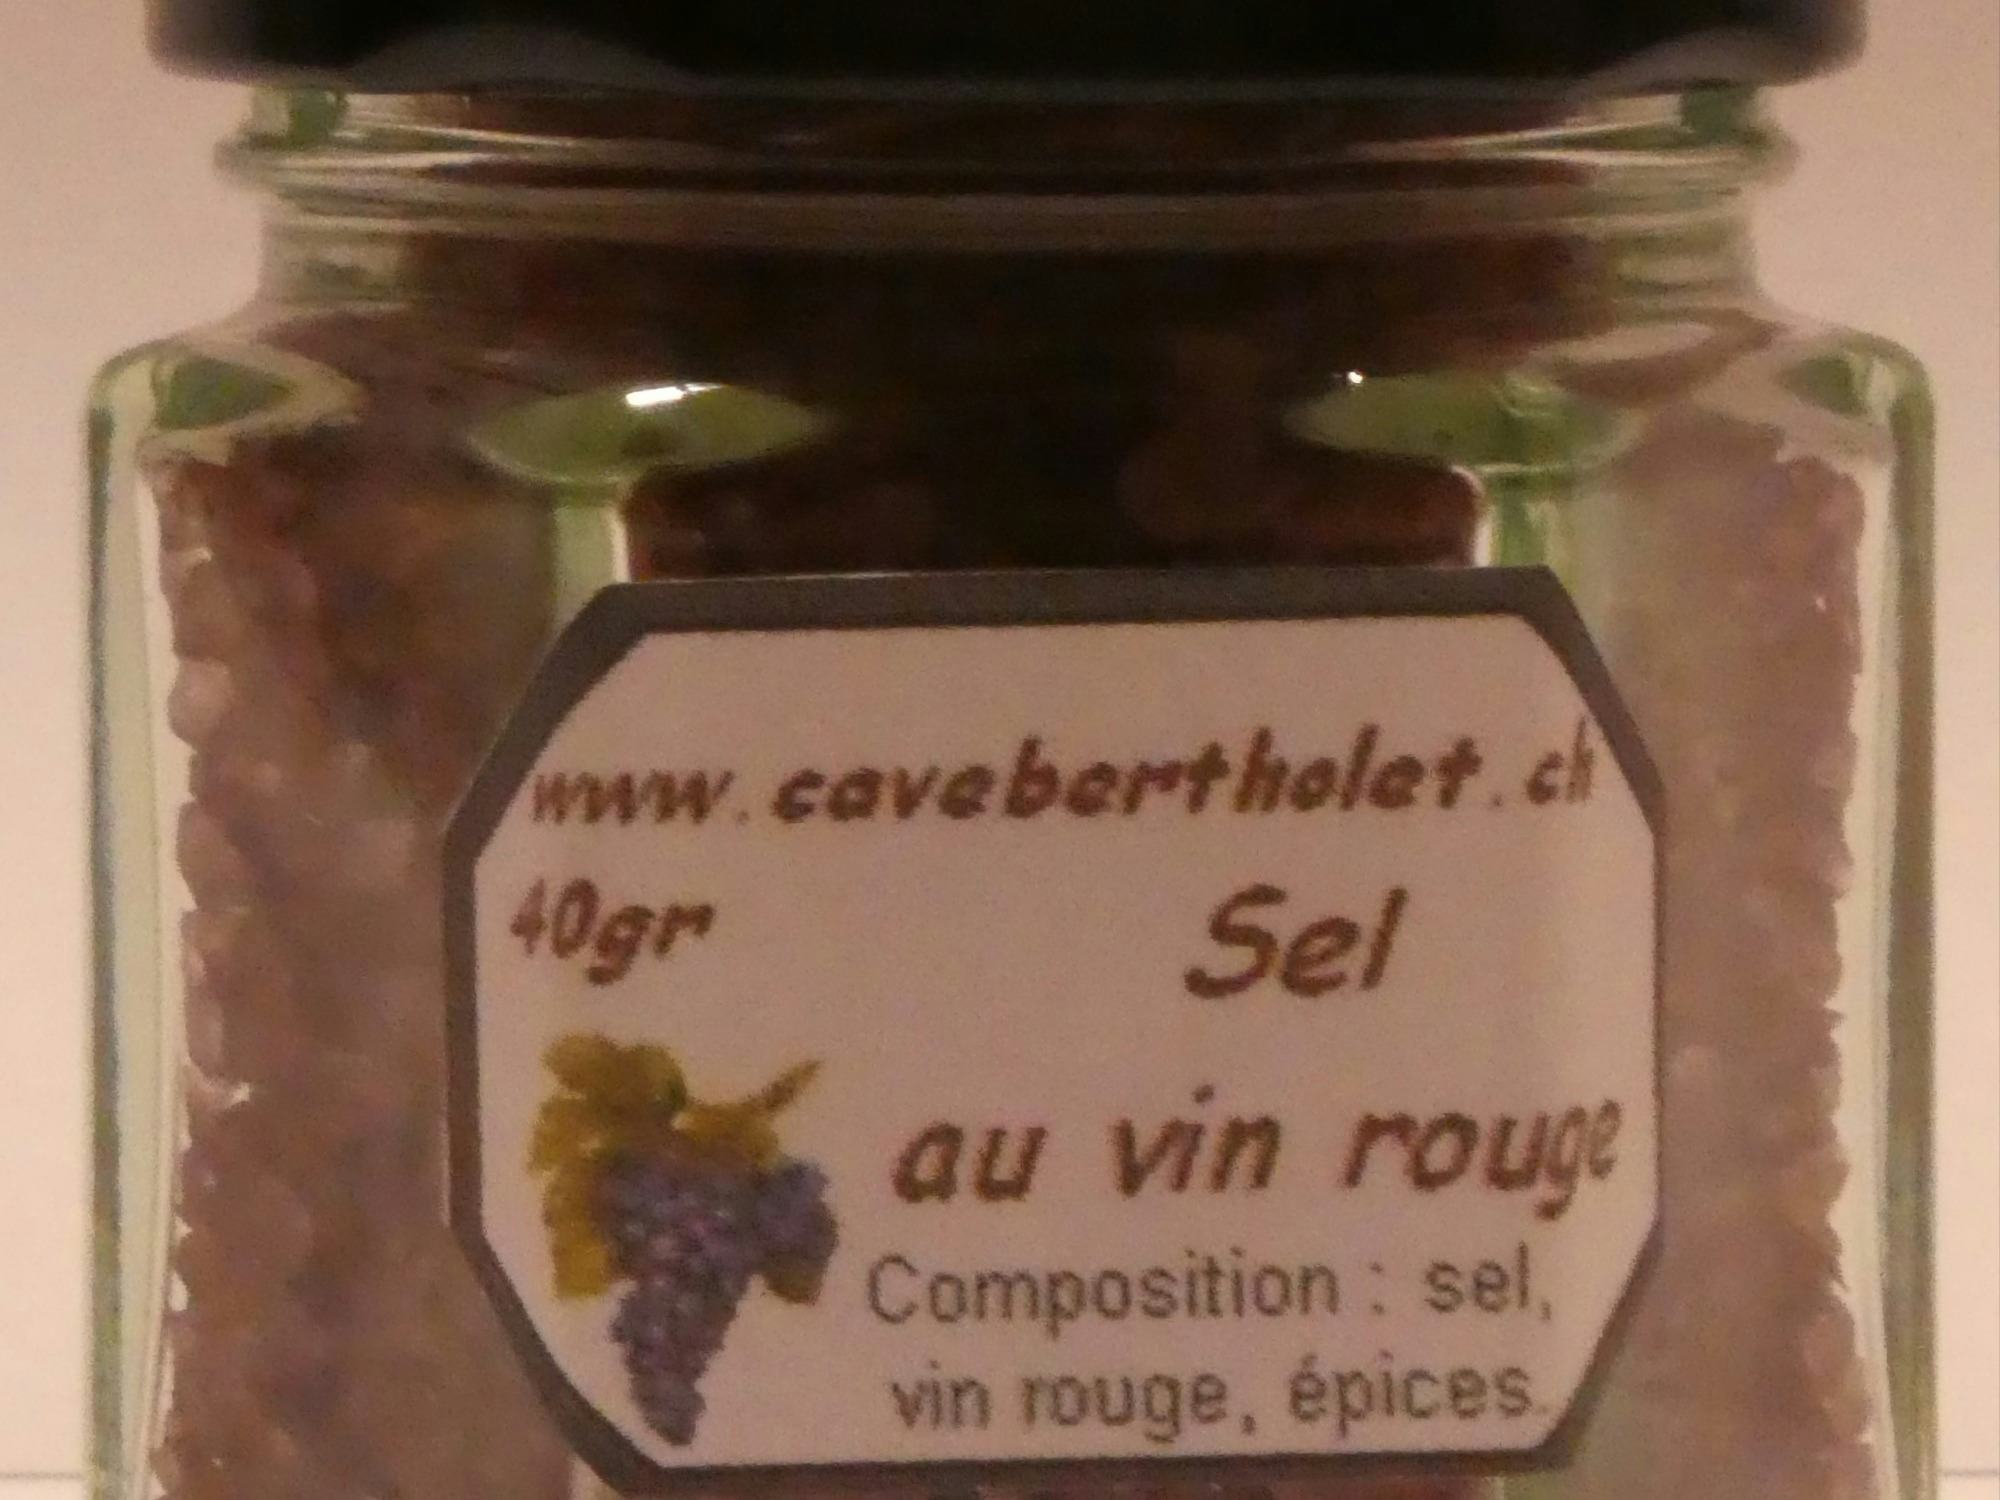 Sel au vin rouge, prodotto artigianale per la vendita diretta in Svizzera